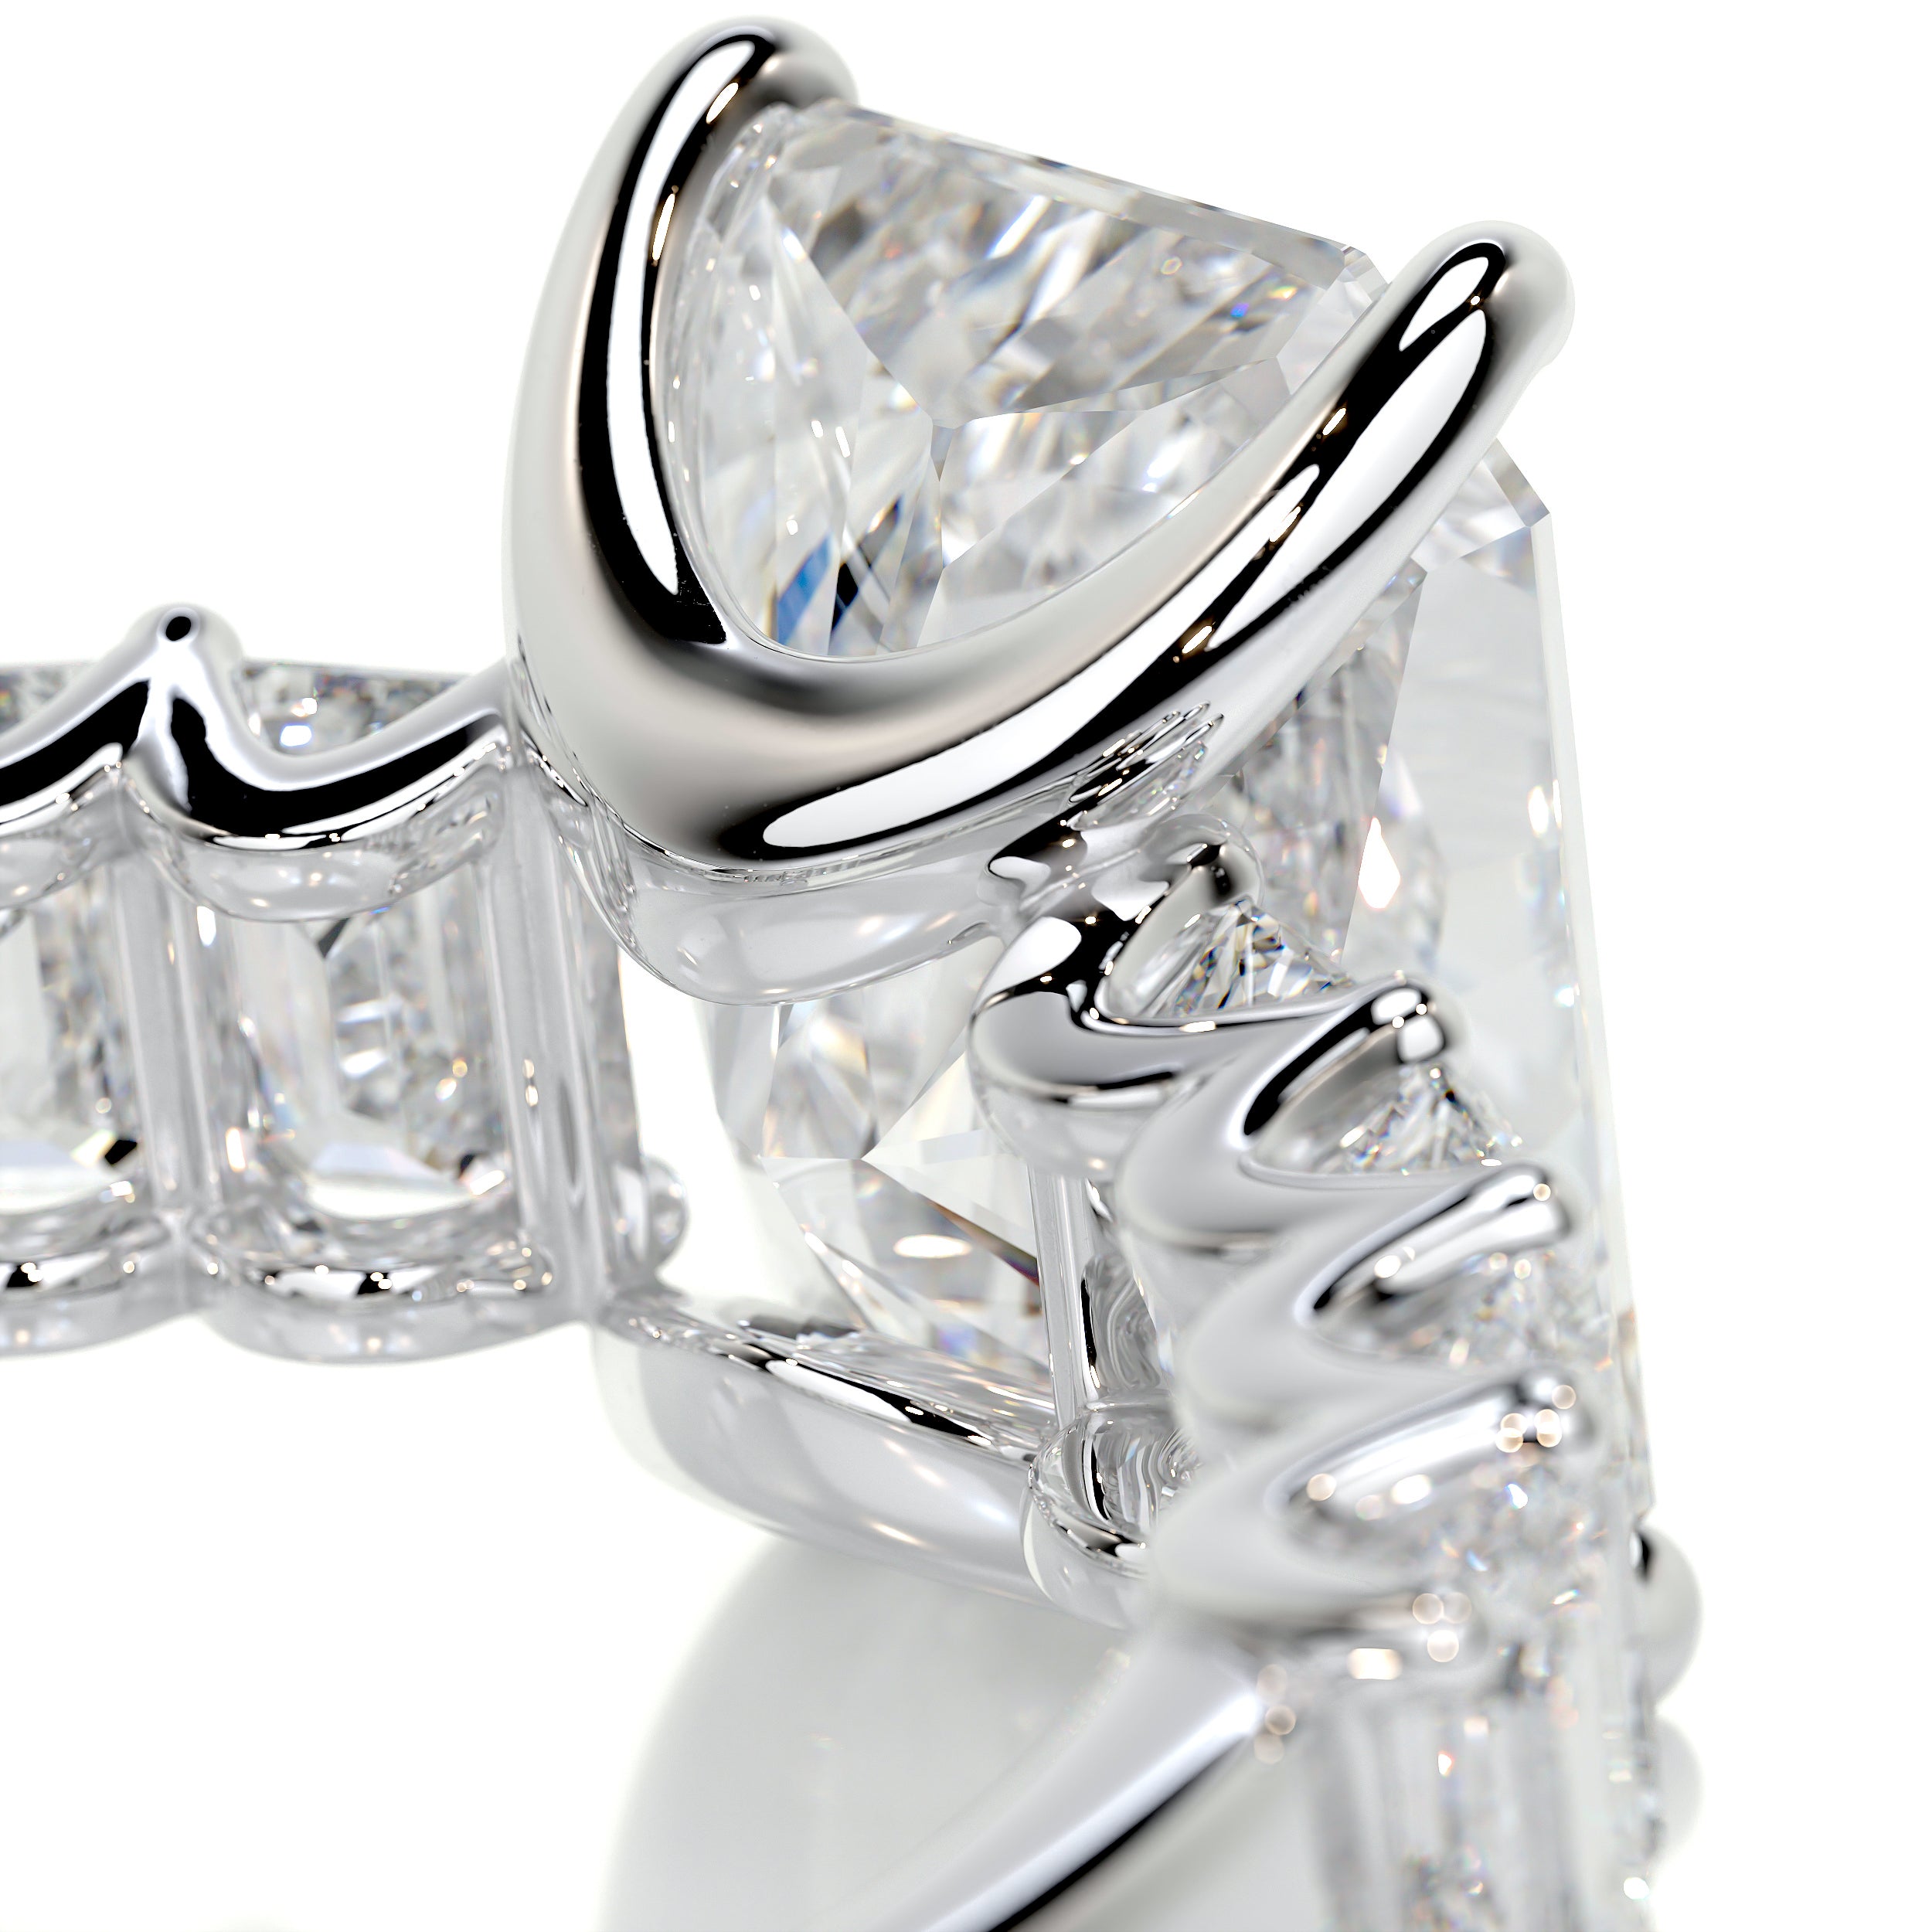 Arabella Diamond Engagement Ring   (5 Carat) -18K White Gold